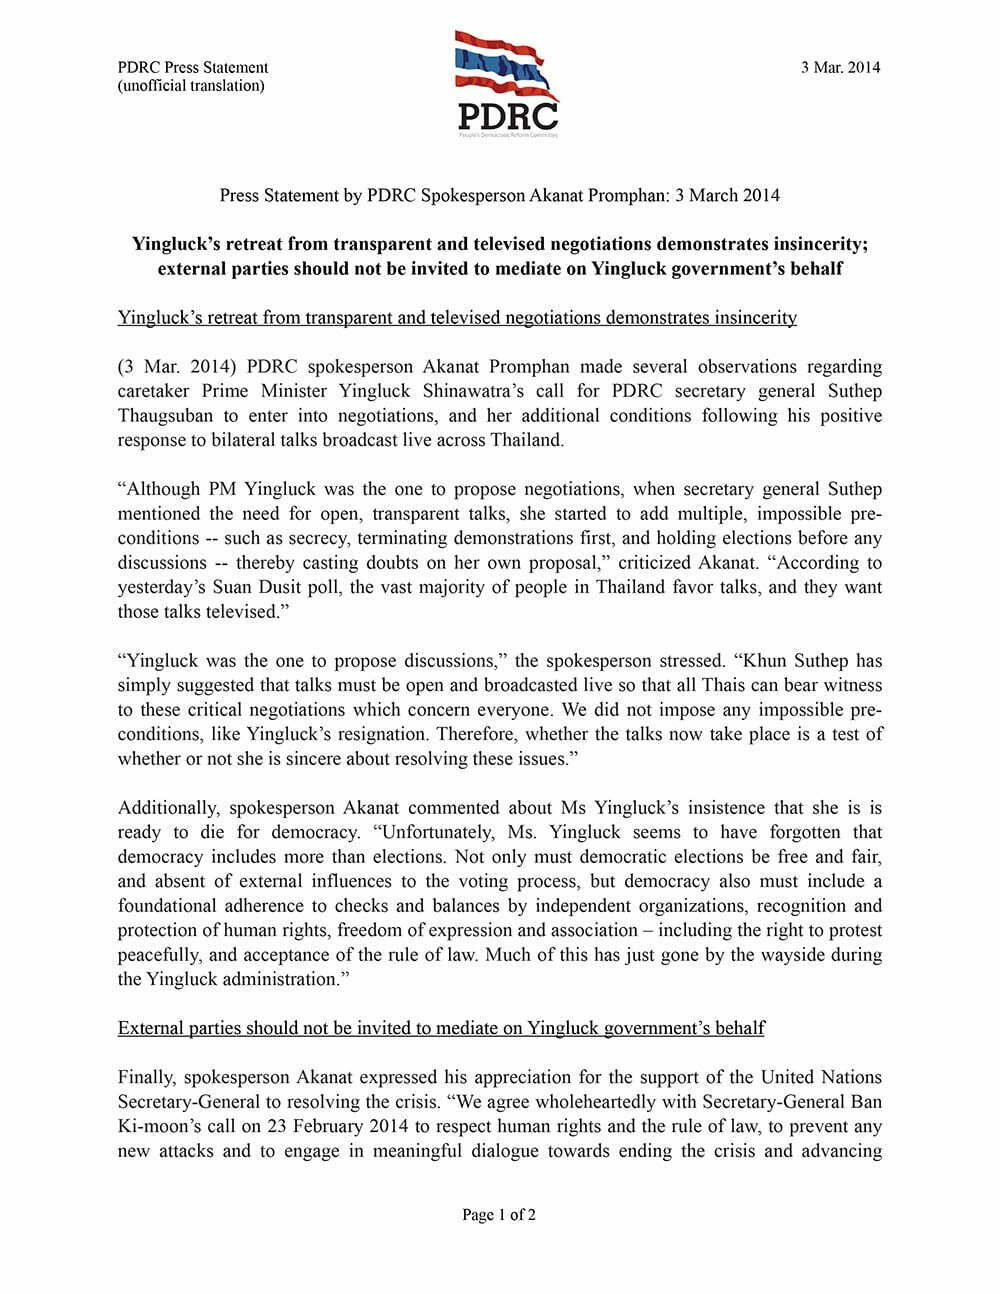 pdrc-press-statement akanat 3-mar-2014-1